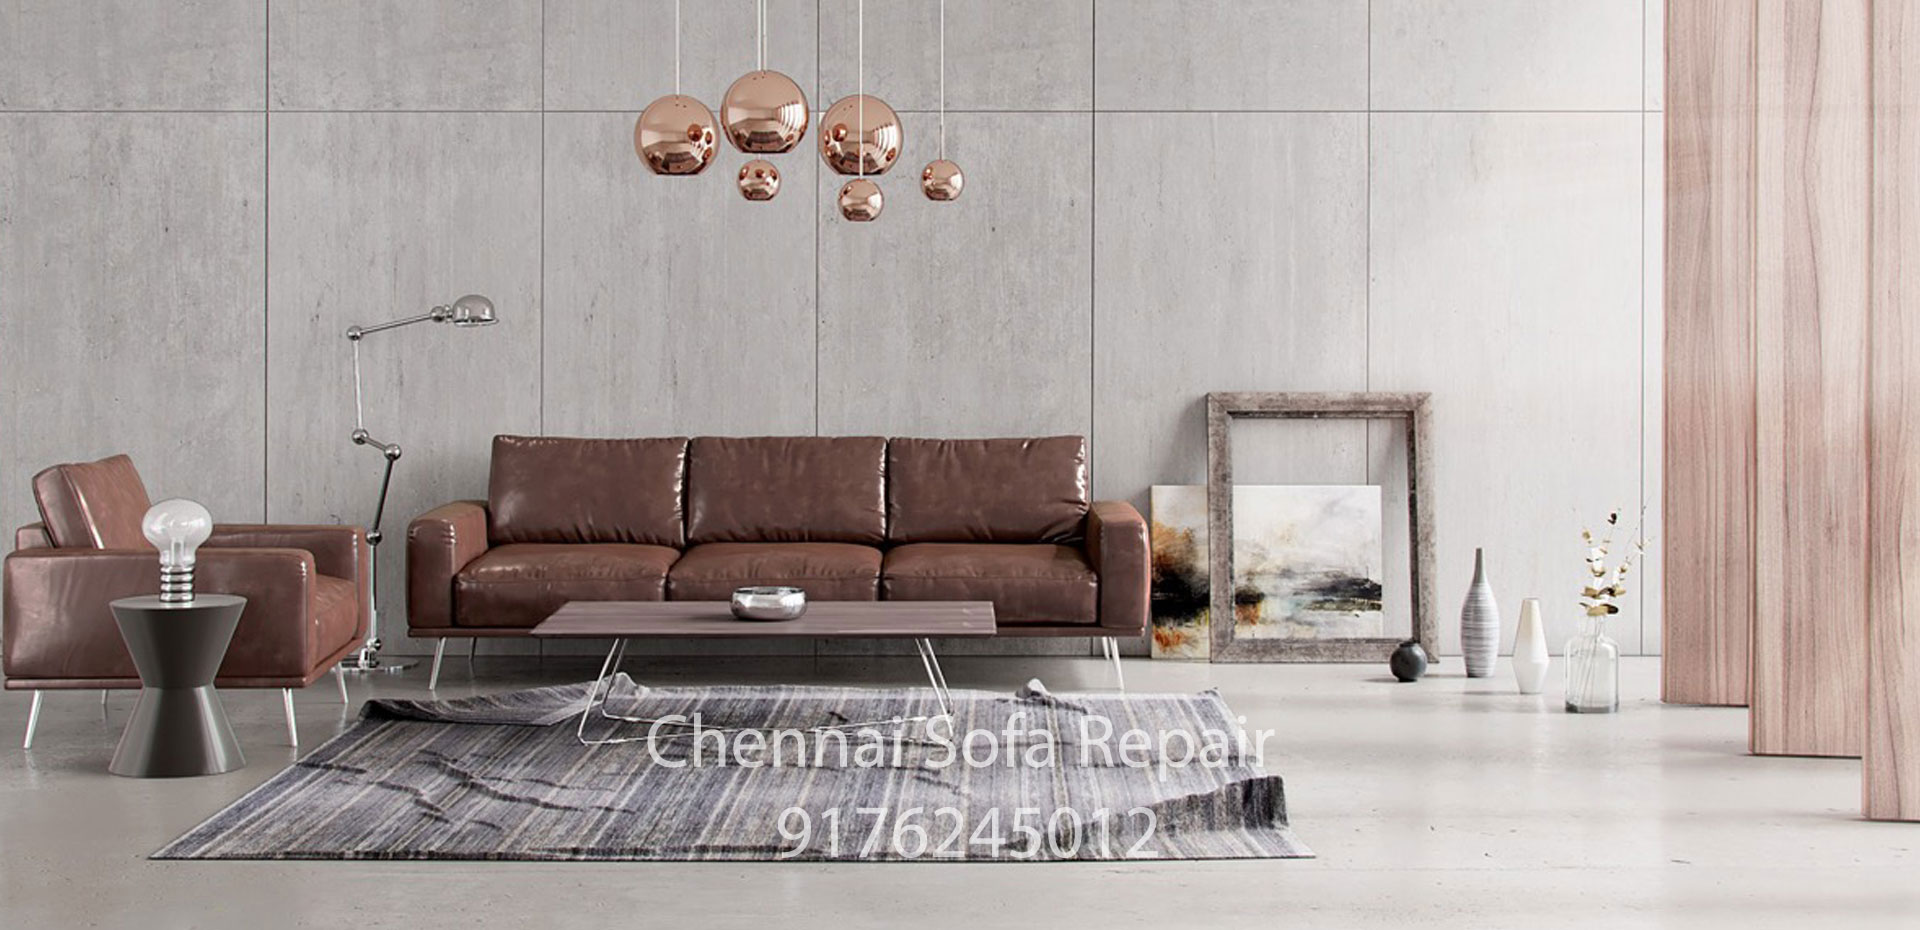 sofa renovation Perungudi OMR Chennai